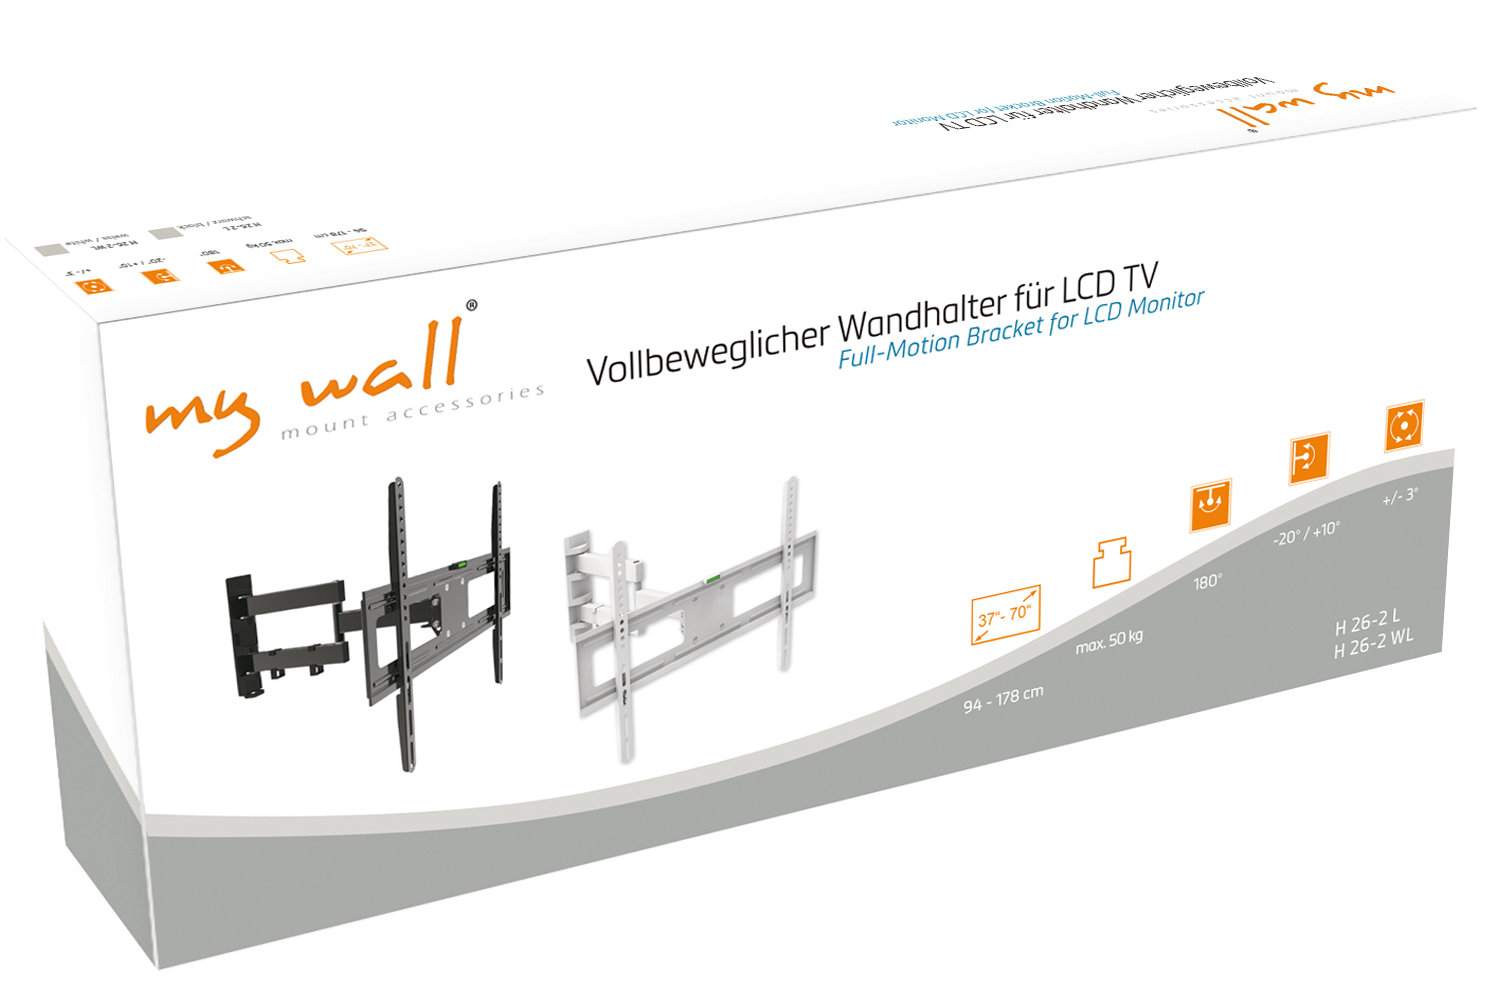 Vollbeweglicher Wandhalter für LCD TV MyWall H26-2-/bilder/big/h26-2,h26-2wl_karton.jpg